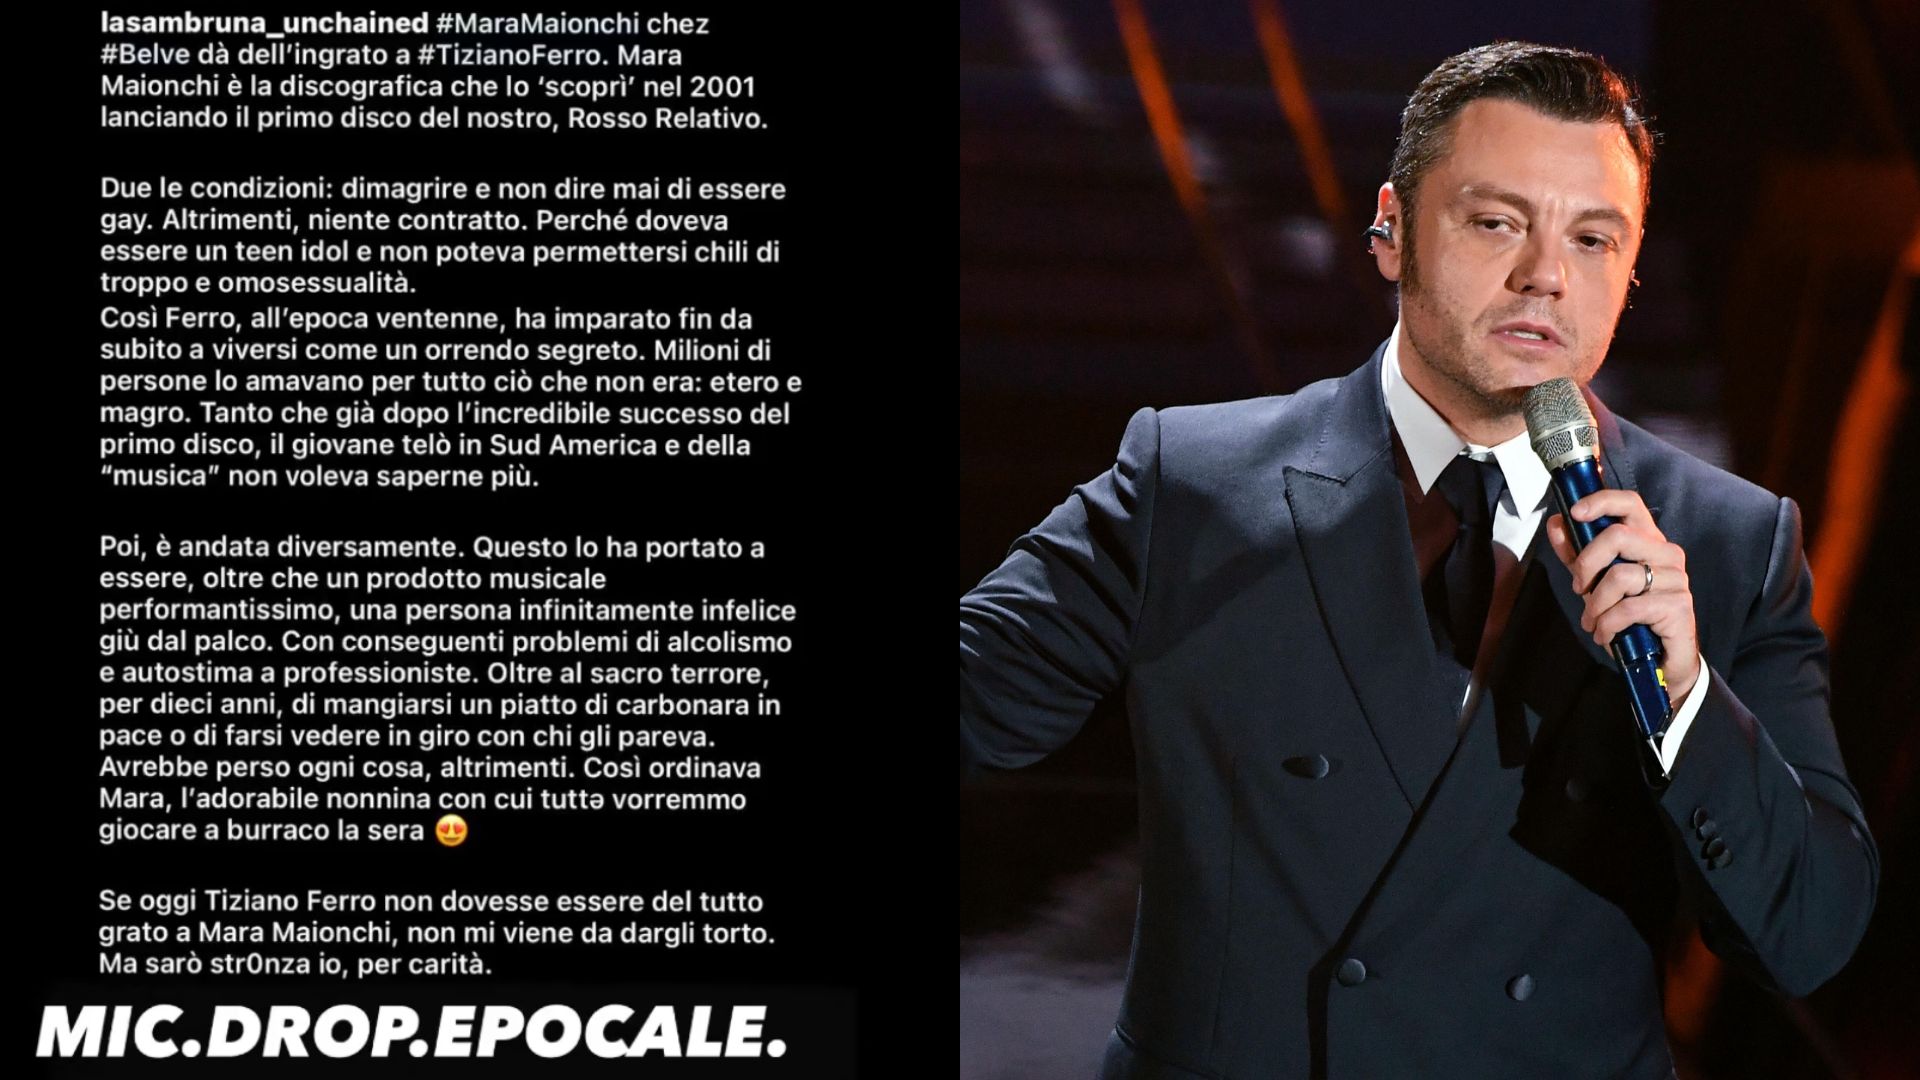 Tiziano Ferro La acusación contra Mara Munici: “Ella lo hizo adelgazar y fingir ser heterosexual” El cantante comparte el mensaje